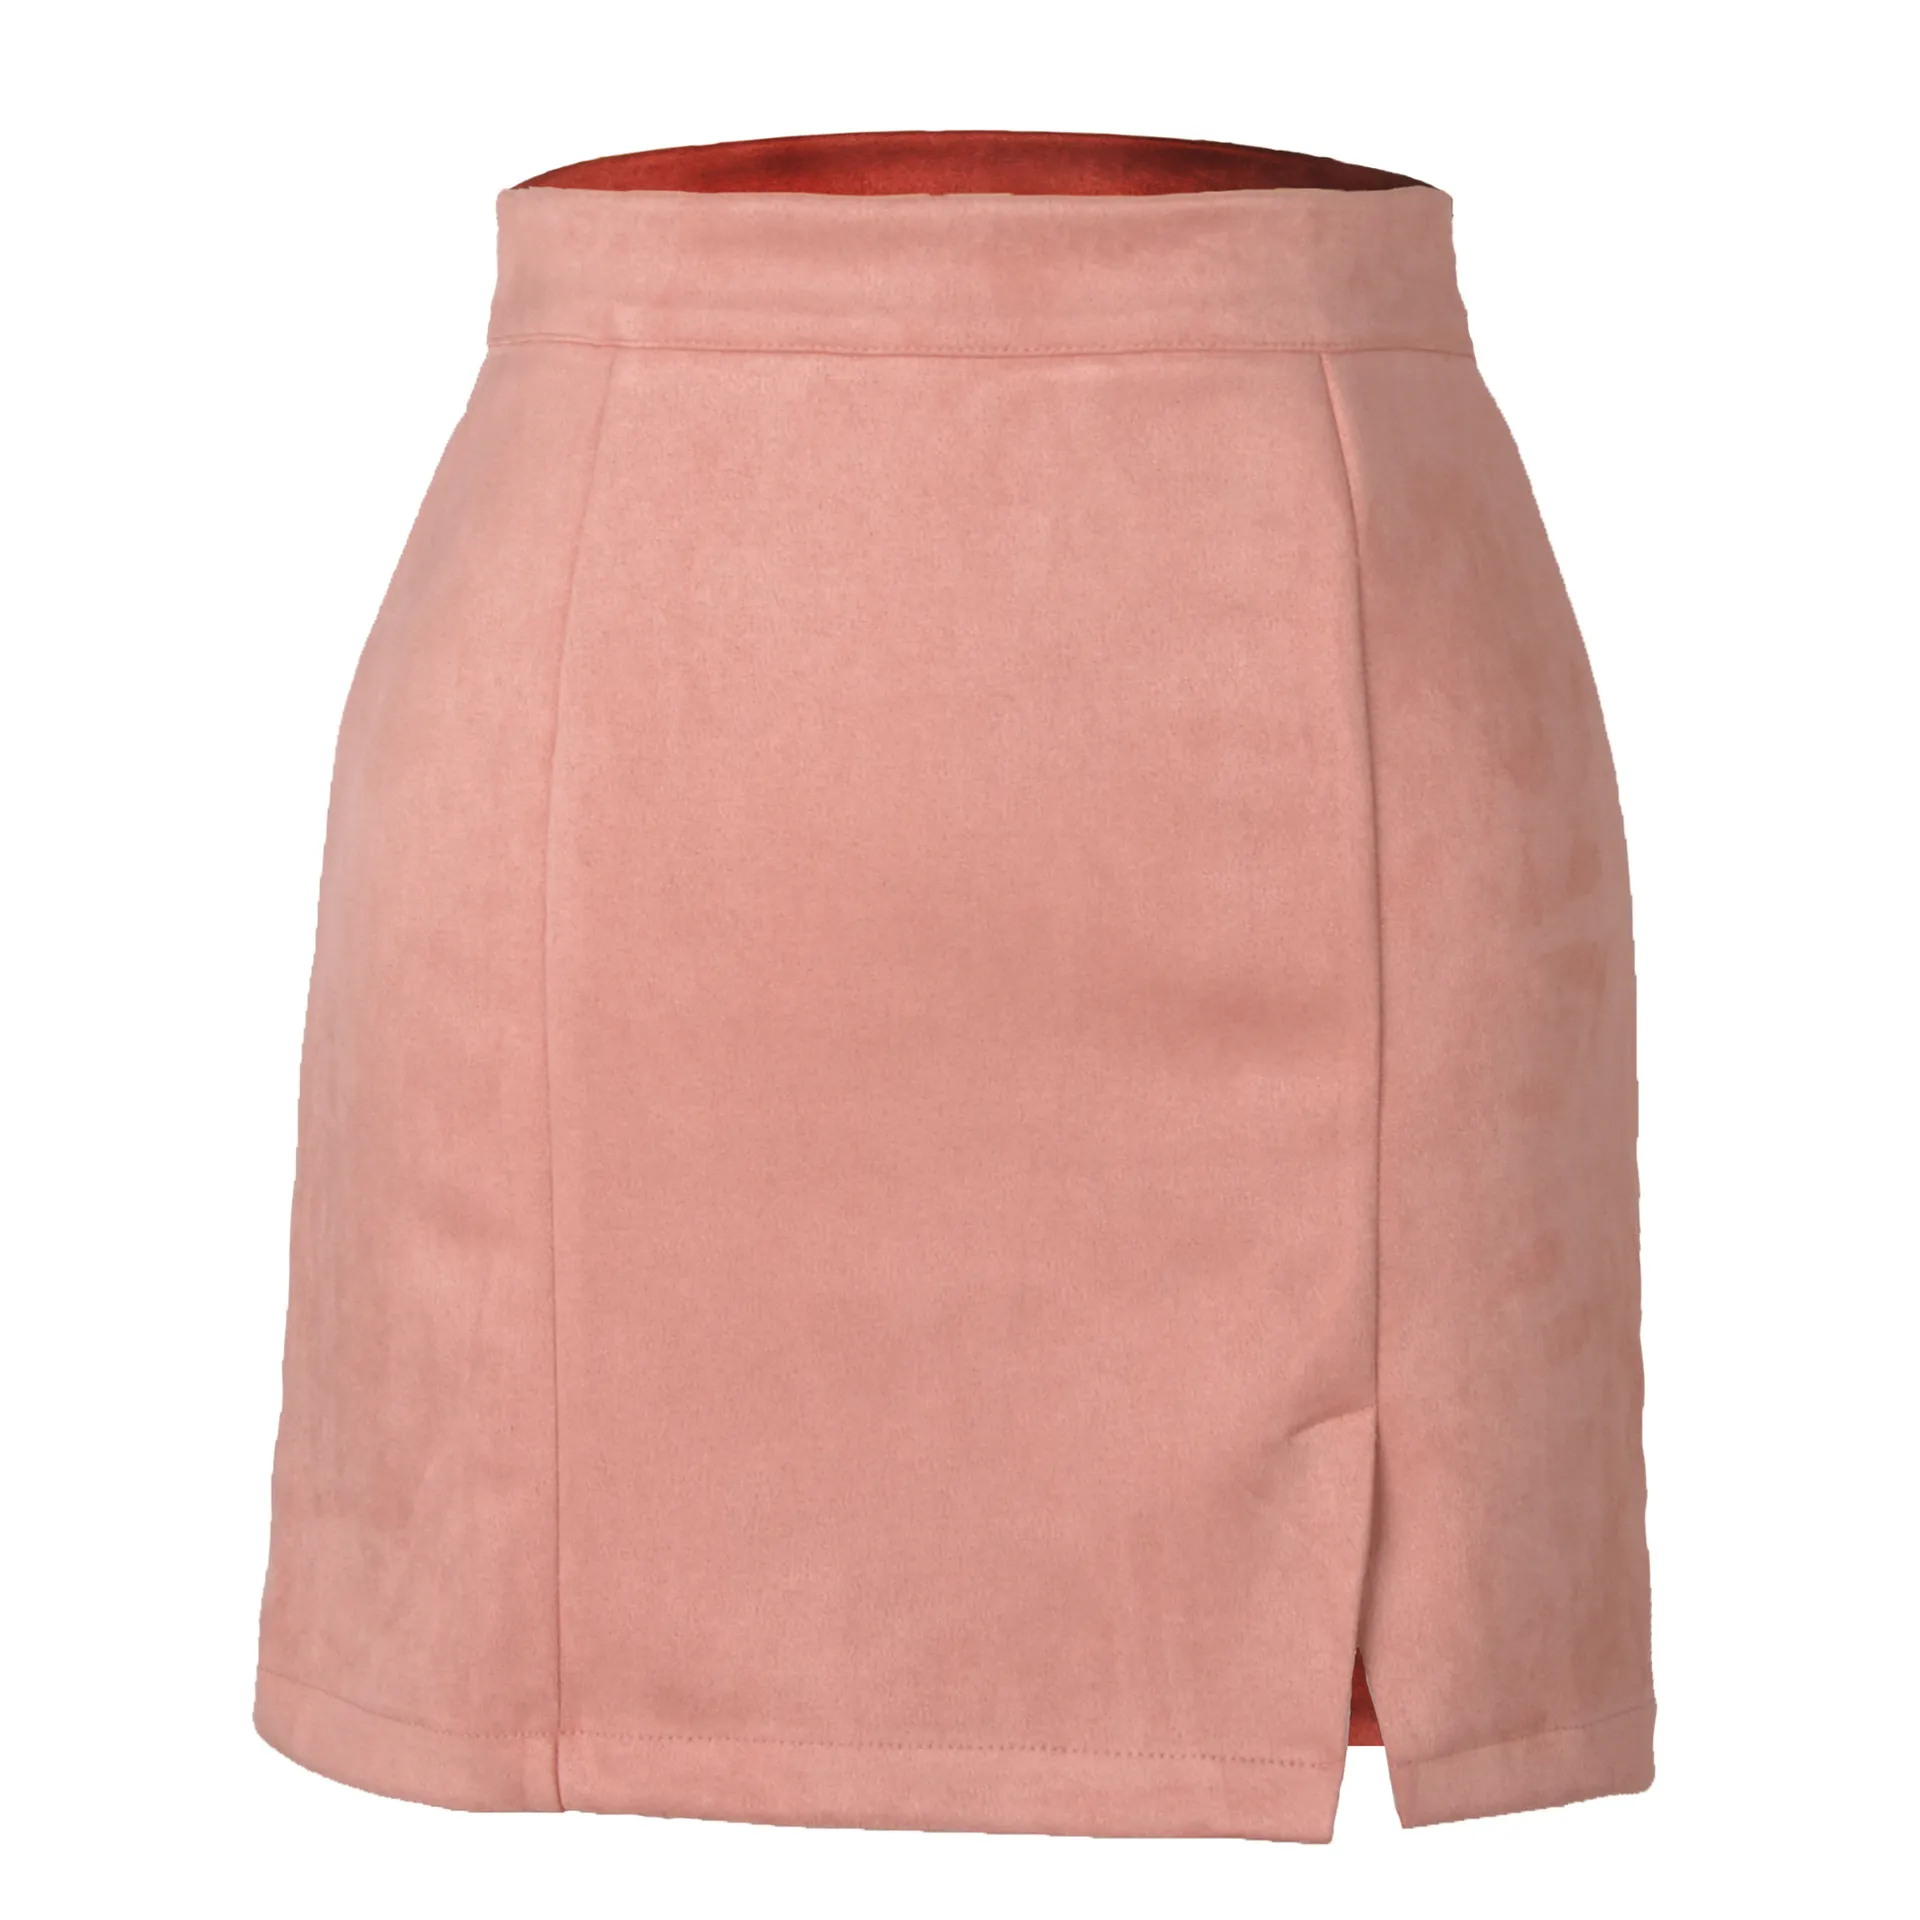 Women's Leather Velvet Short Skirt High Waist Zipper A-line Solid Color Skirts Women Dress Autumn and Winter